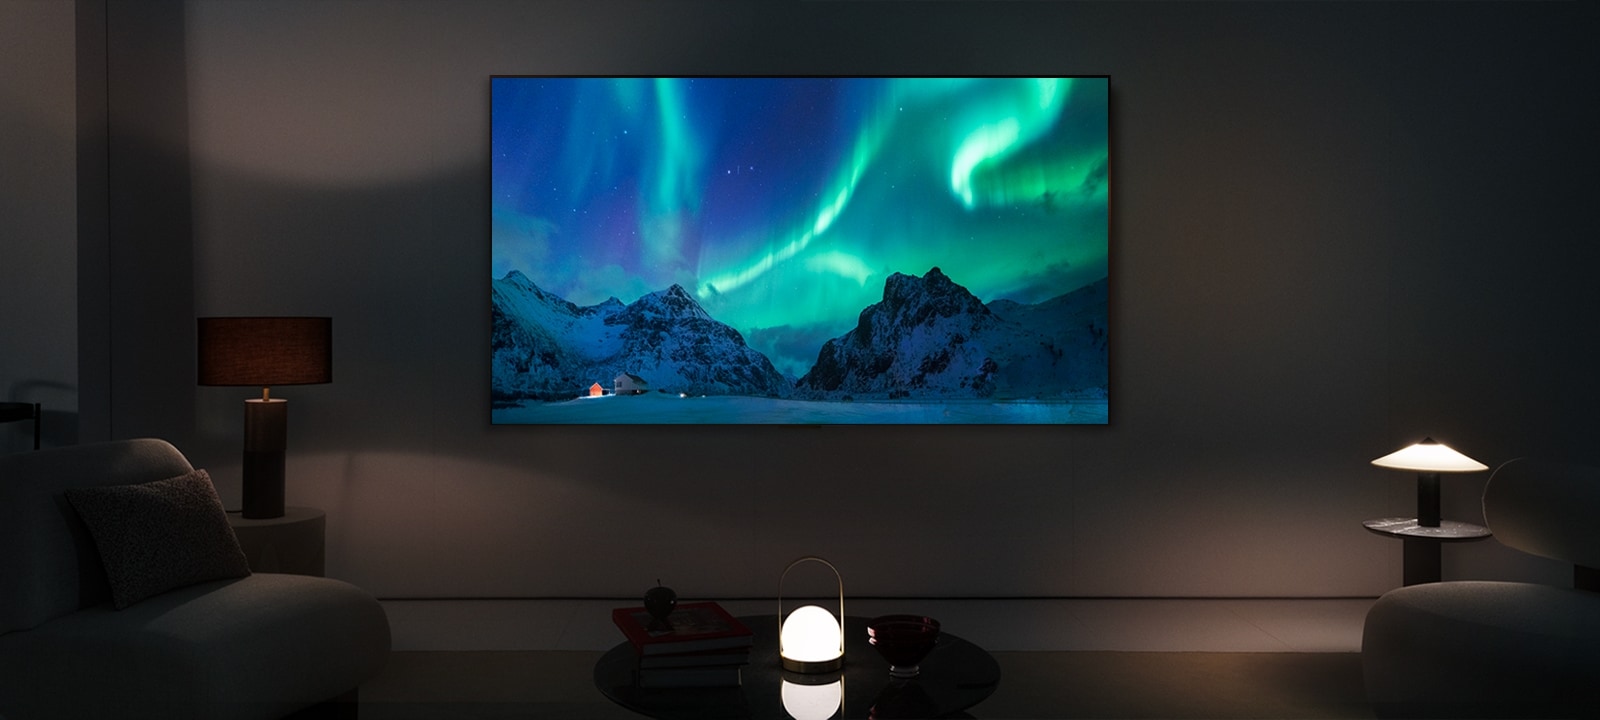 LG OLED TV in een moderne woonruimte bij nacht. Een schermafbeelding van aurora borealis wordt weergegeven met het ideale helderheidsniveau.